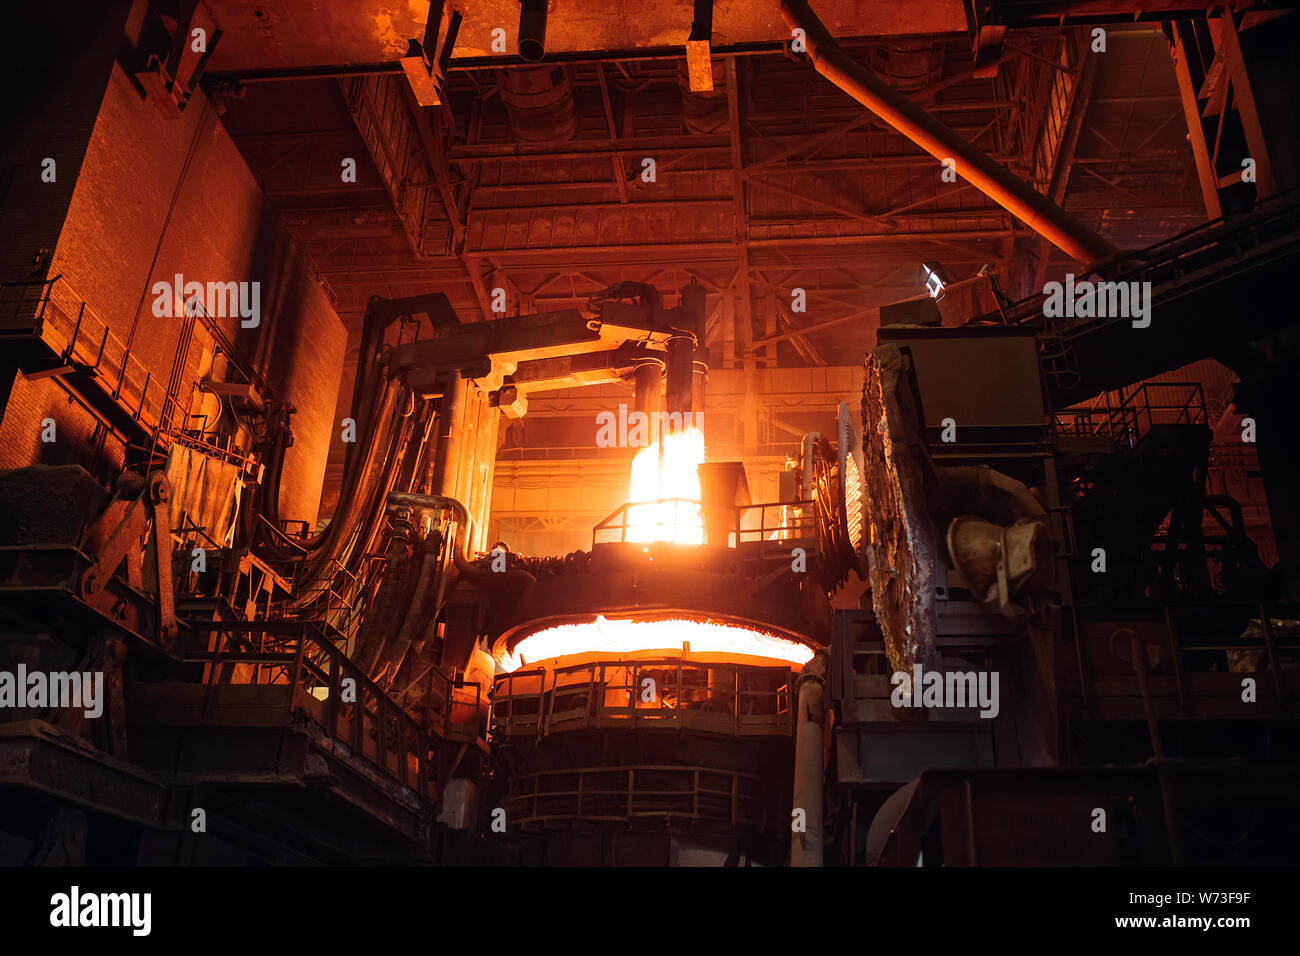 La fonte du métal dans une usine sidérurgique. Haute température dans le four de fusion Banque D'Images